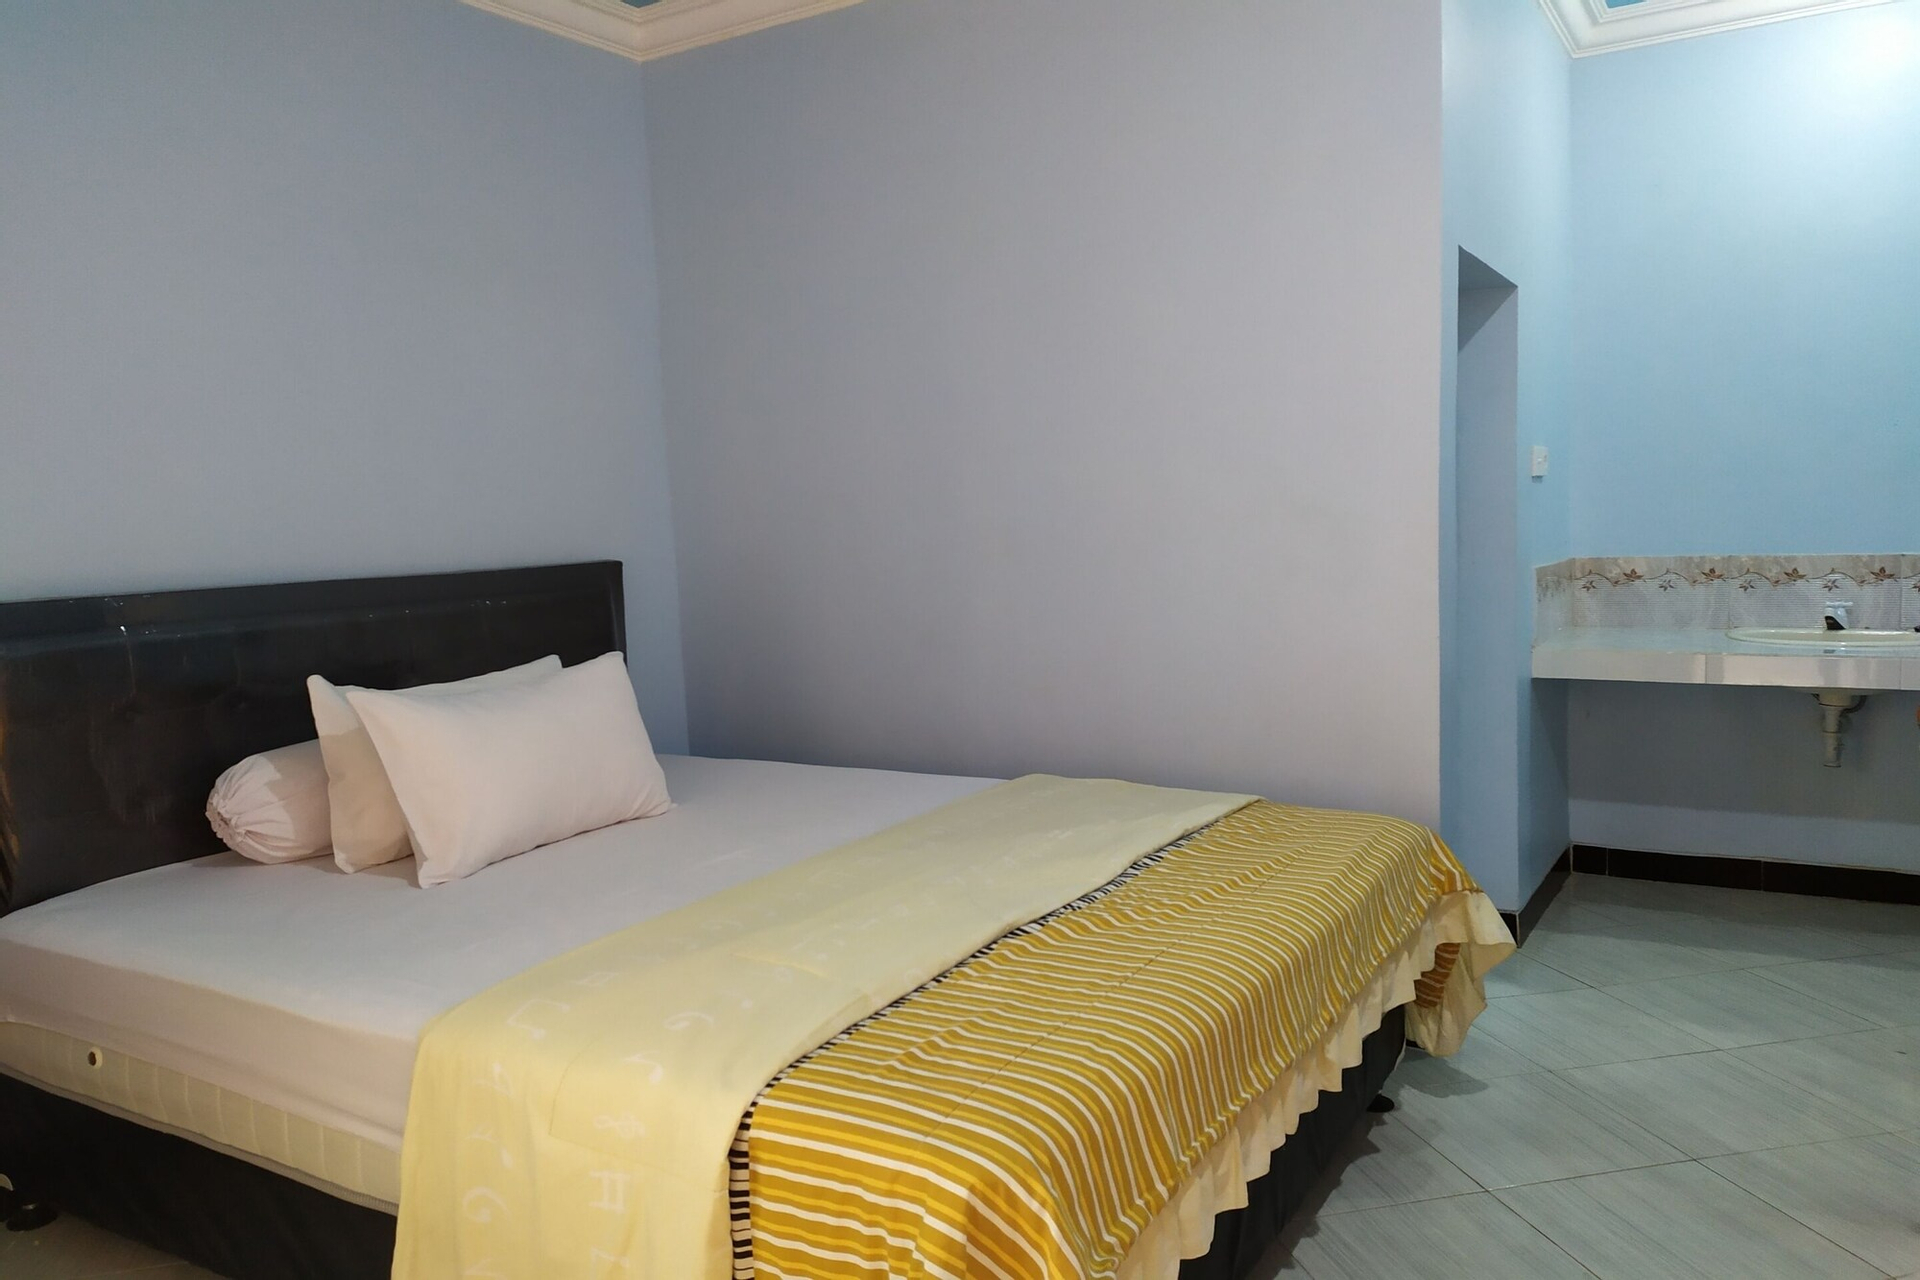 Room 3, OYO 2423 Hotel Tubalong Taliwang Syariah, Sumbawa Barat